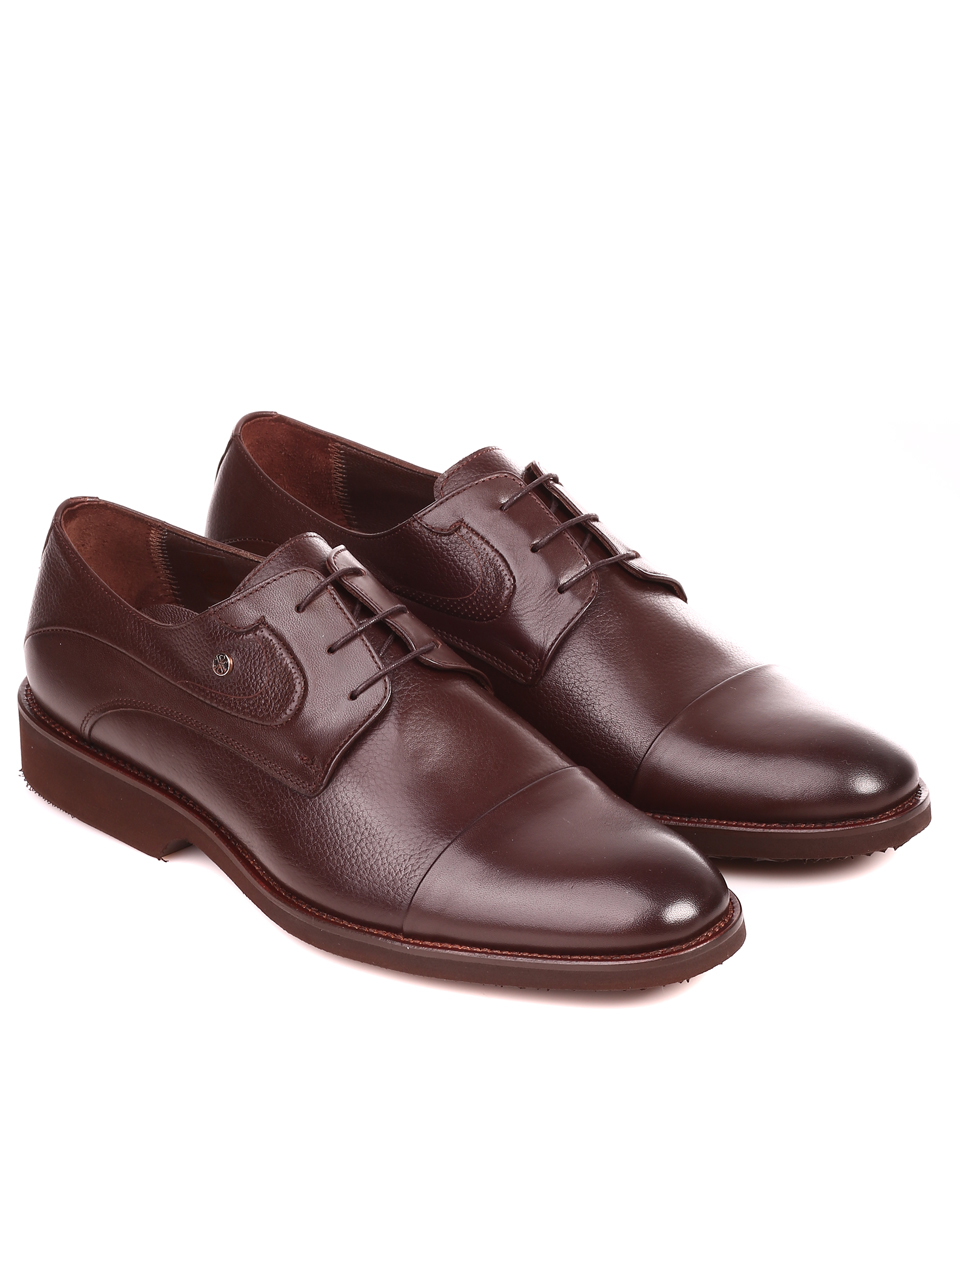 Елегантни мъжки обувки от естествена кожа 7AT-21857 brown